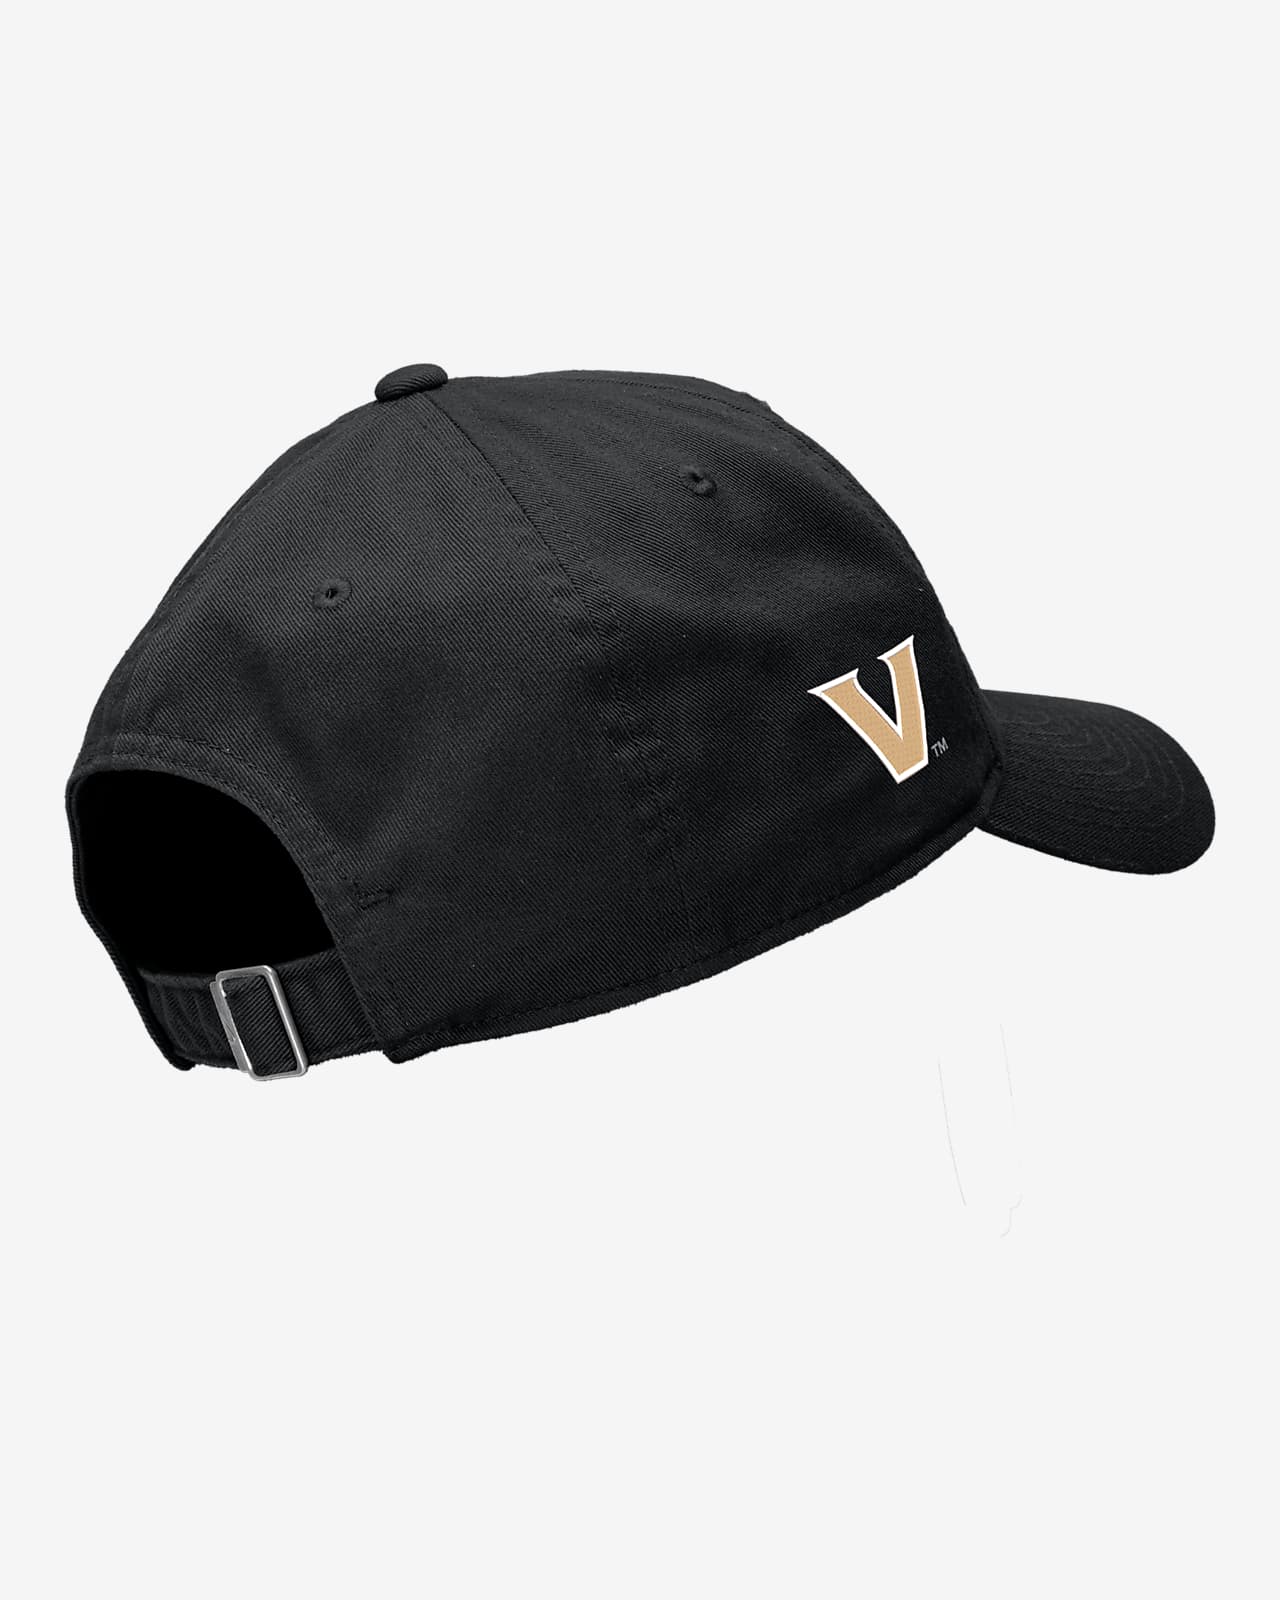 College Nike Cap. Vanderbilt